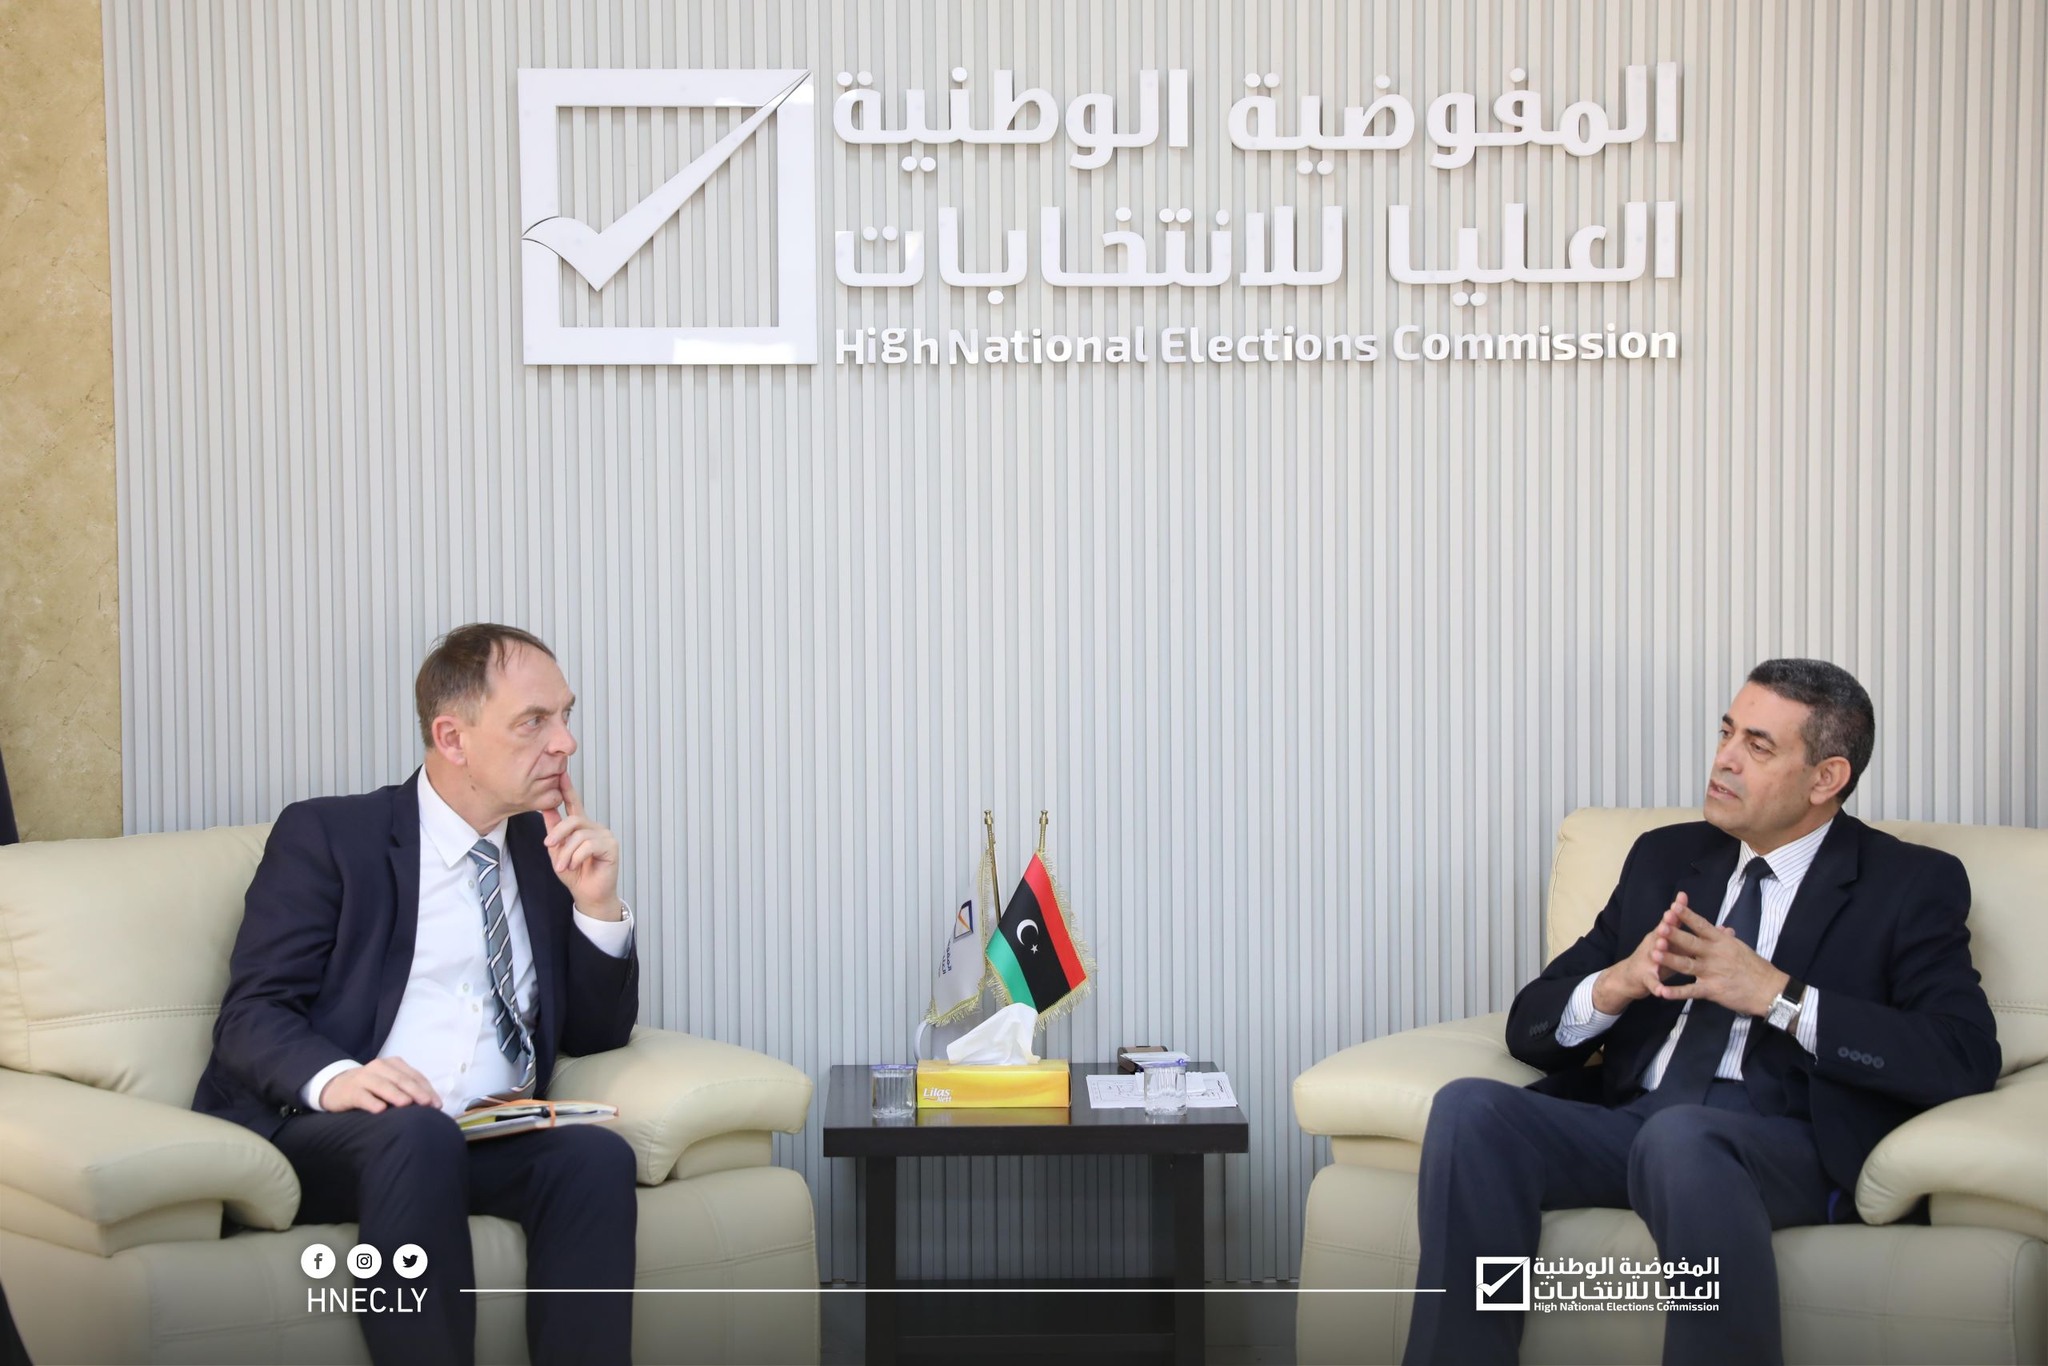  رئيس مجلس المفوضية العليا للانتخابات يلتقي مع المبعوث الألماني الخاص لدى ليبيا . 